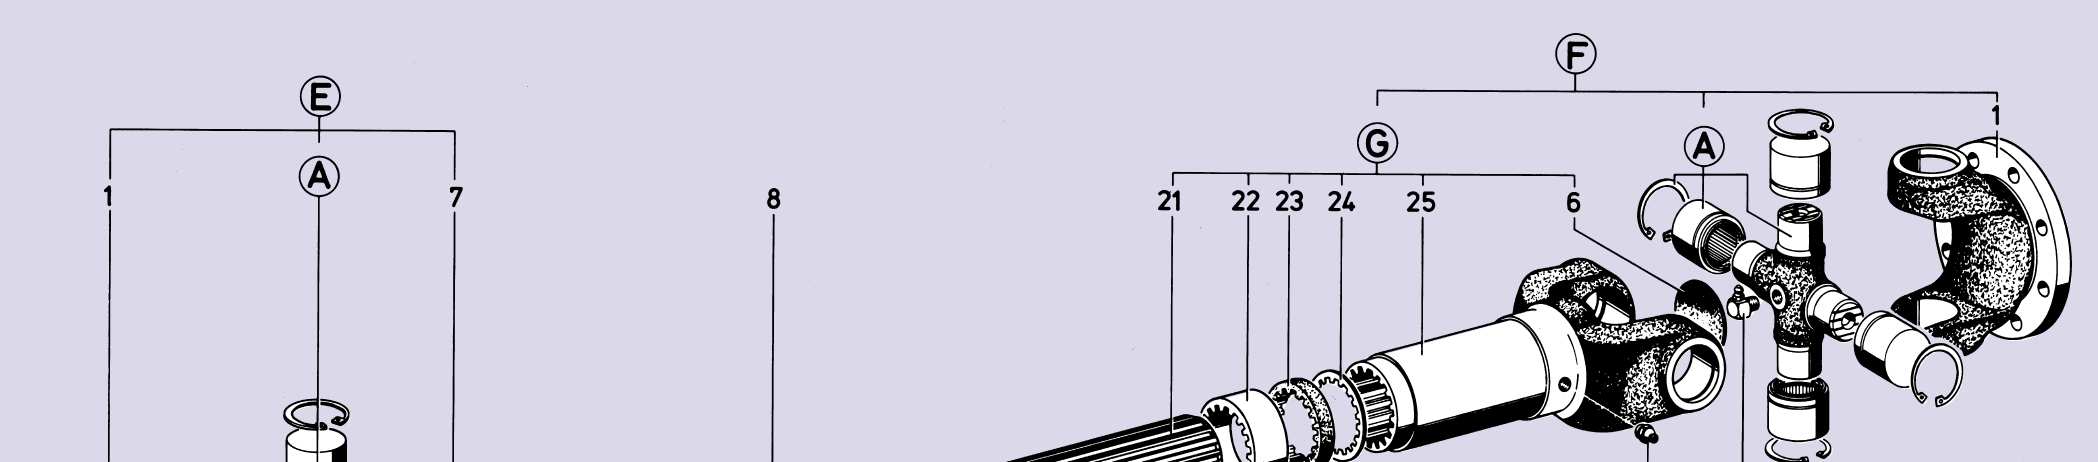 przegub z tuleją przesuwną, kompletny składający się z części 1, 6, 19, 21-25 i A G kompletna tuleja o zmiennej długości składająca się z części 6, 19, 21-25 Części pojedyncze: 1 kołnierz z widełkami